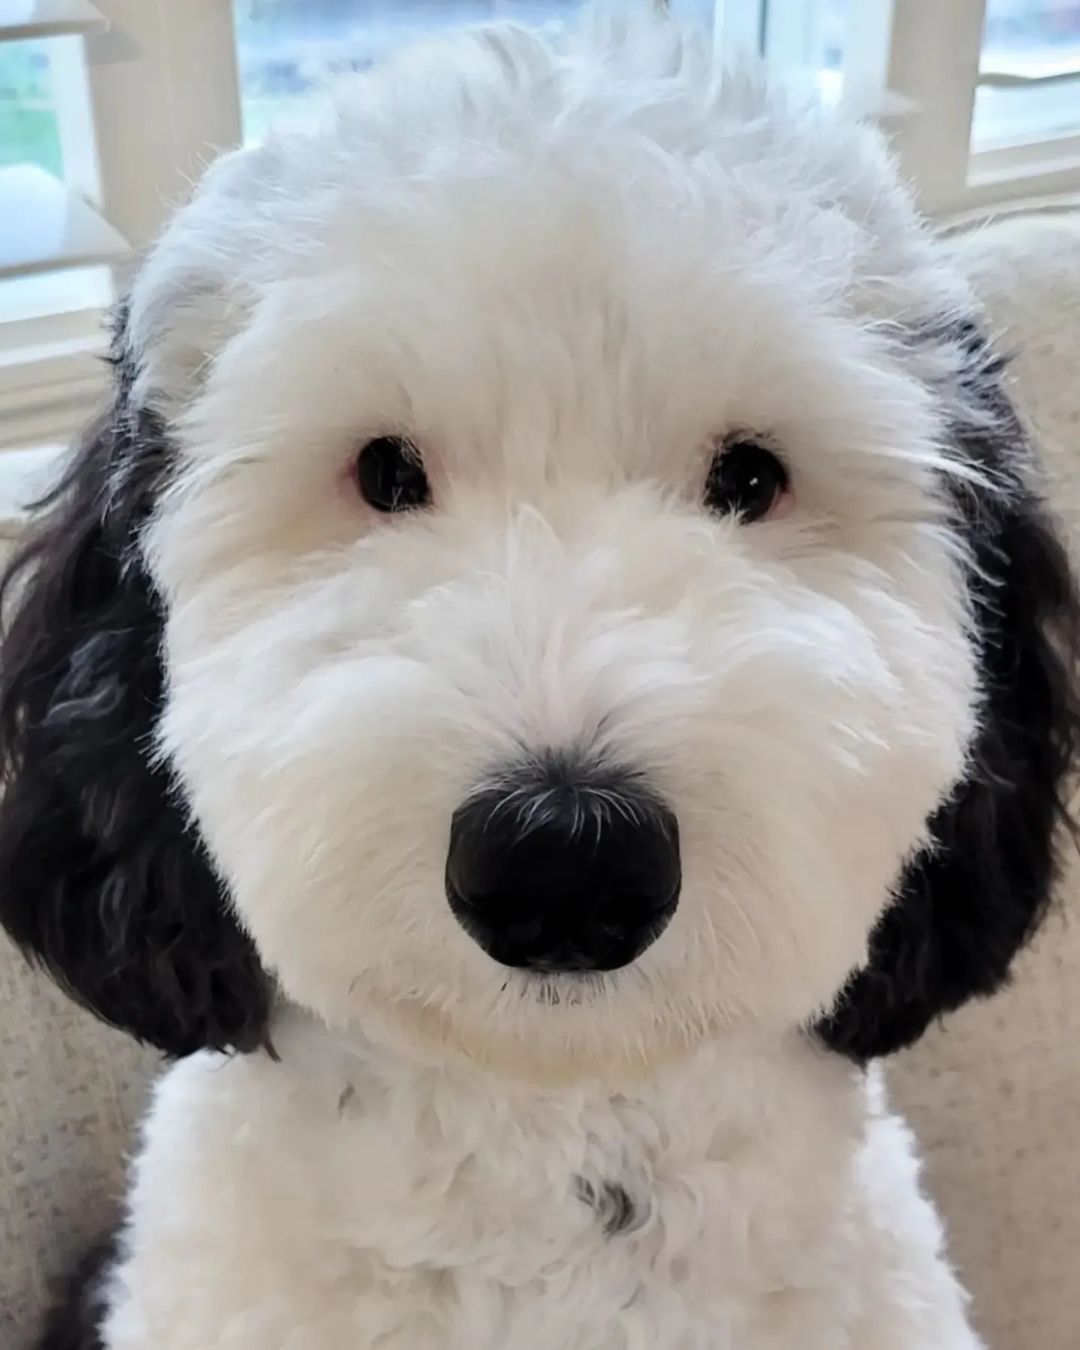 Bayley the dog who looks like Snoopy